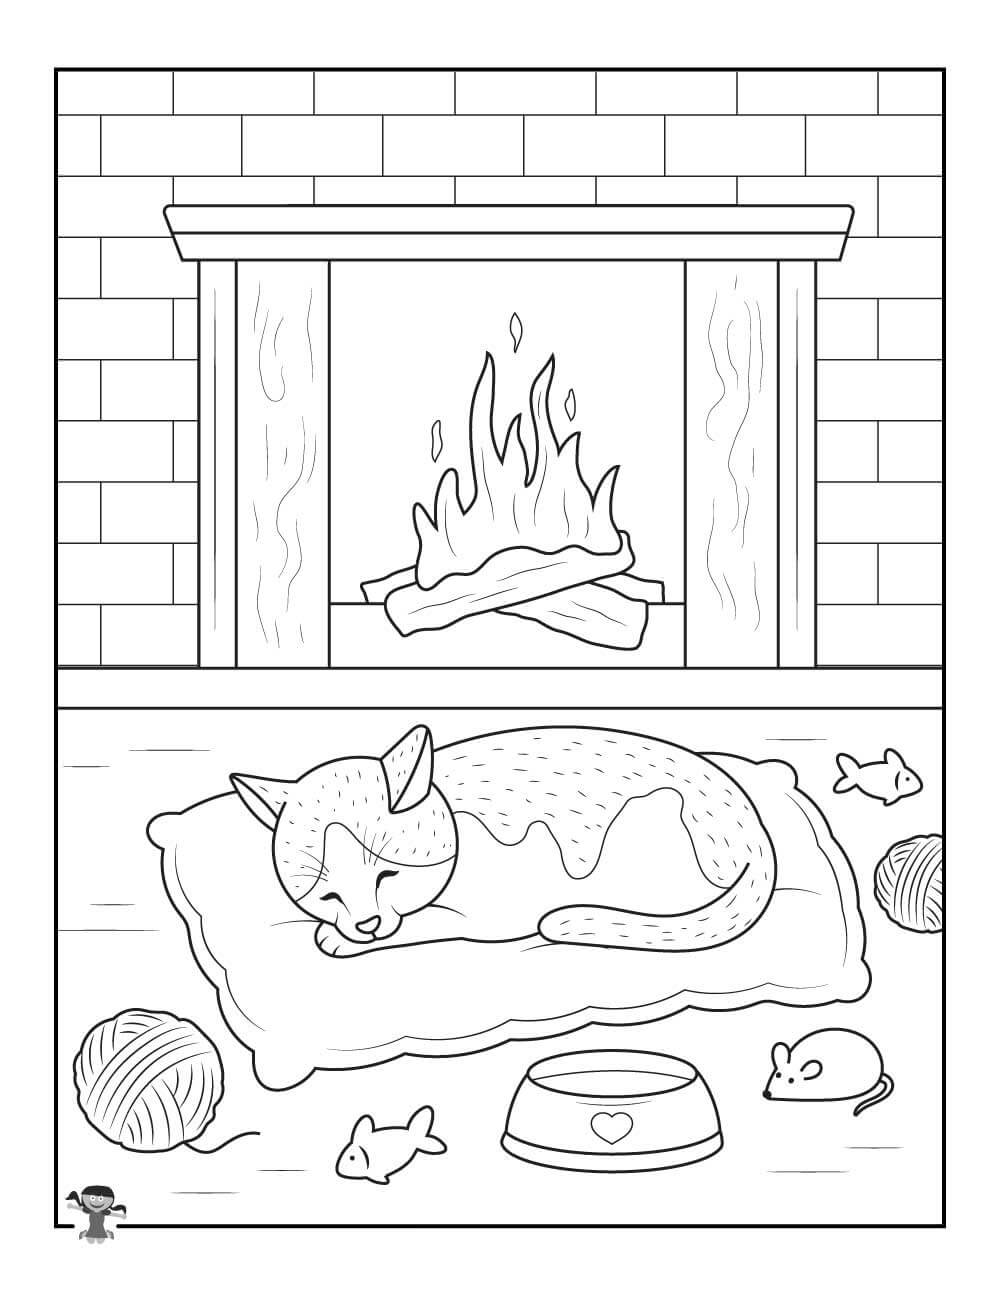 Kat slaapt voor een oven